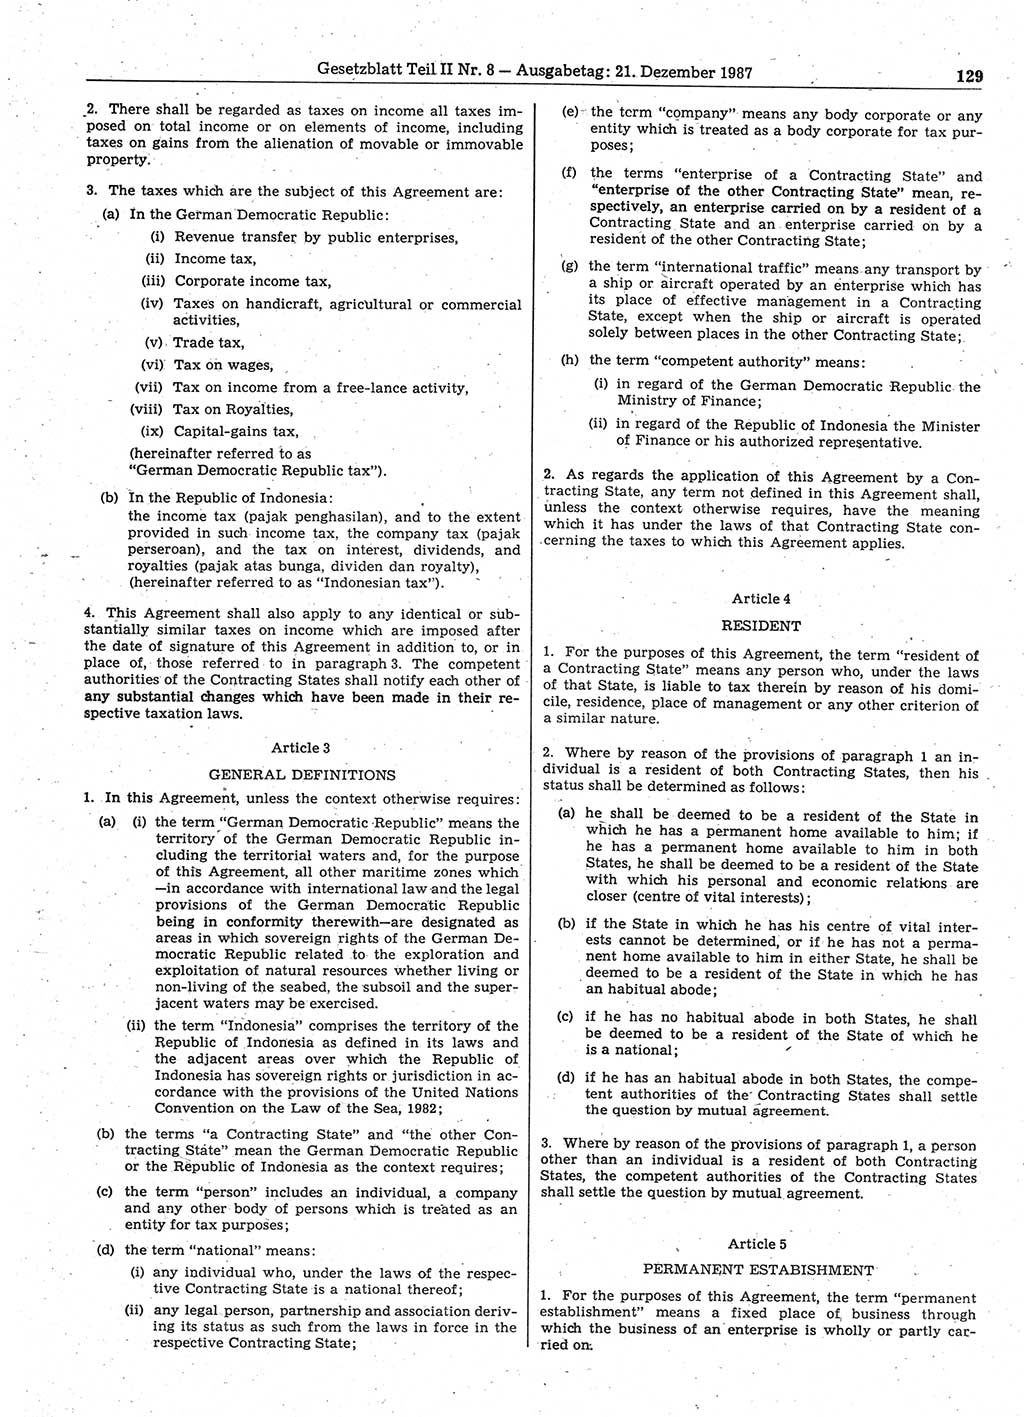 Gesetzblatt (GBl.) der Deutschen Demokratischen Republik (DDR) Teil ⅠⅠ 1987, Seite 129 (GBl. DDR ⅠⅠ 1987, S. 129)